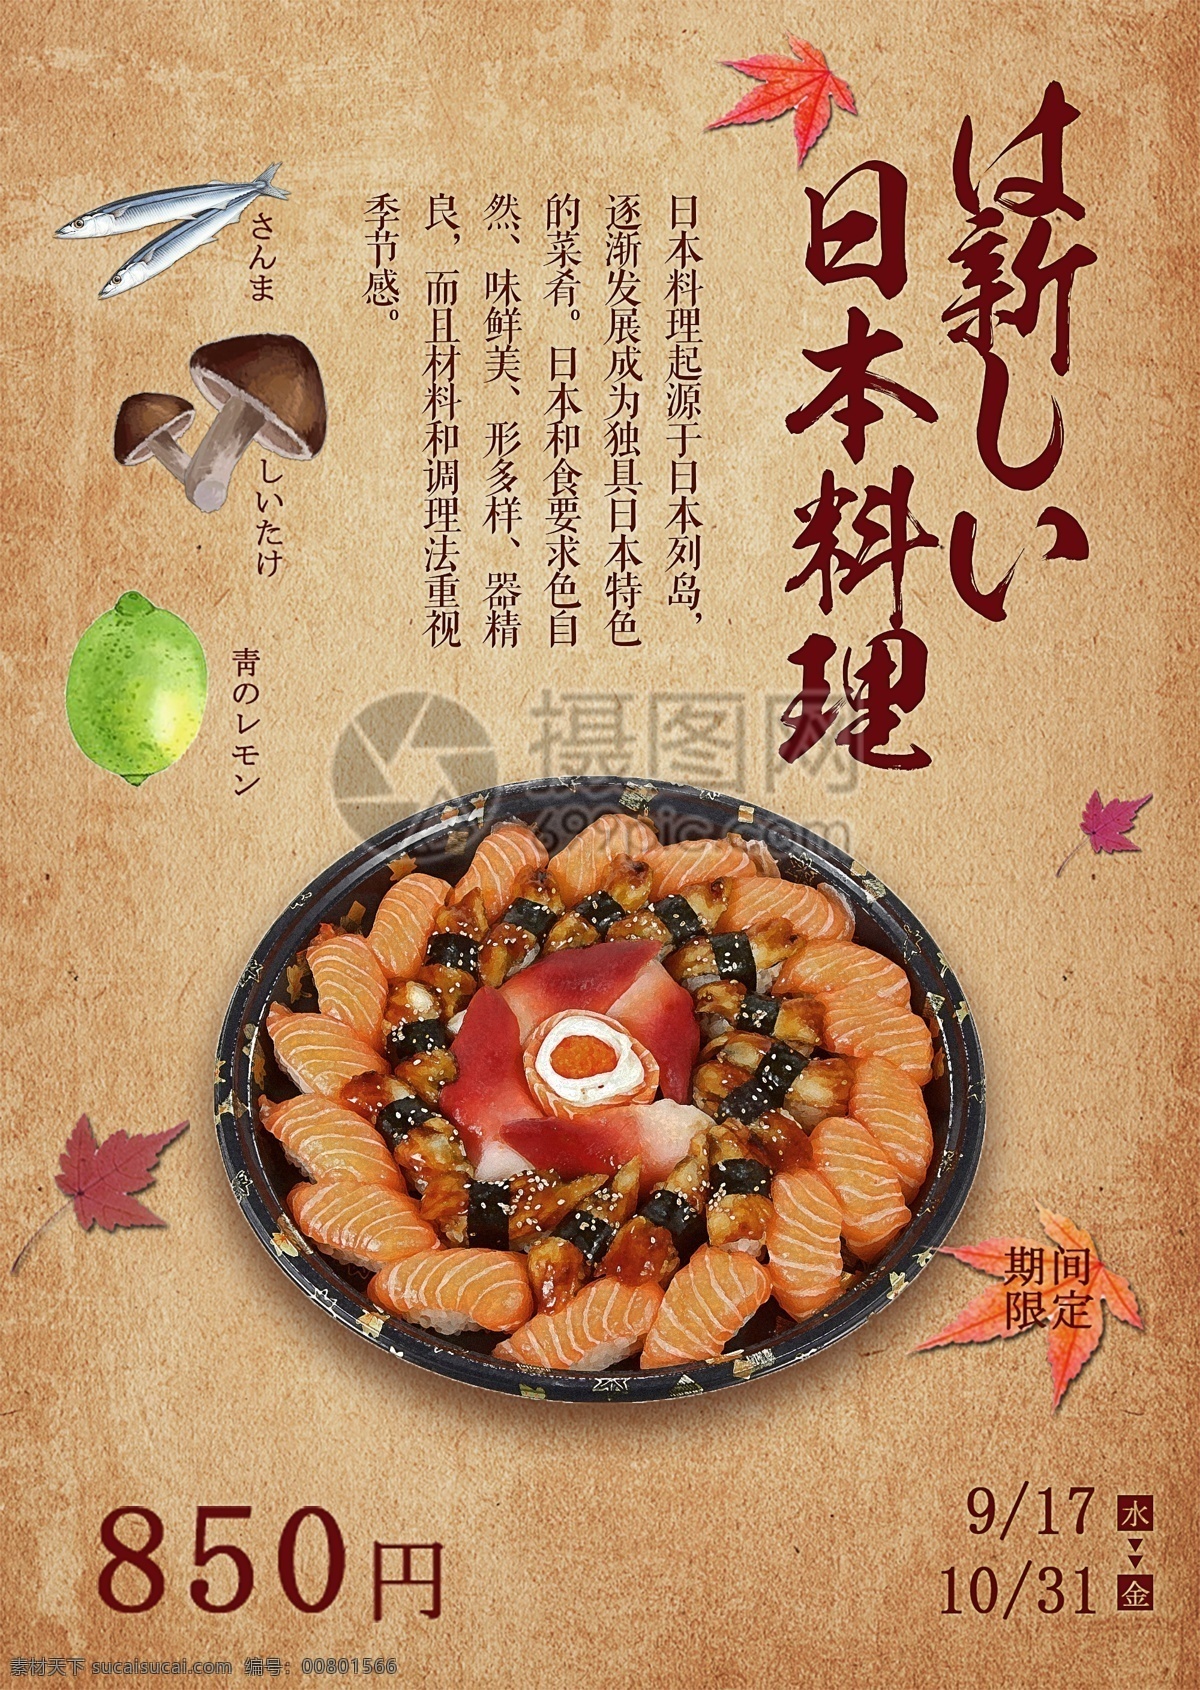 日本美食海报 寿司 料理 日本 美食 三文鱼 日式海报 食物 日本料理 日本美食 美食海报 食物海报 促销 打折